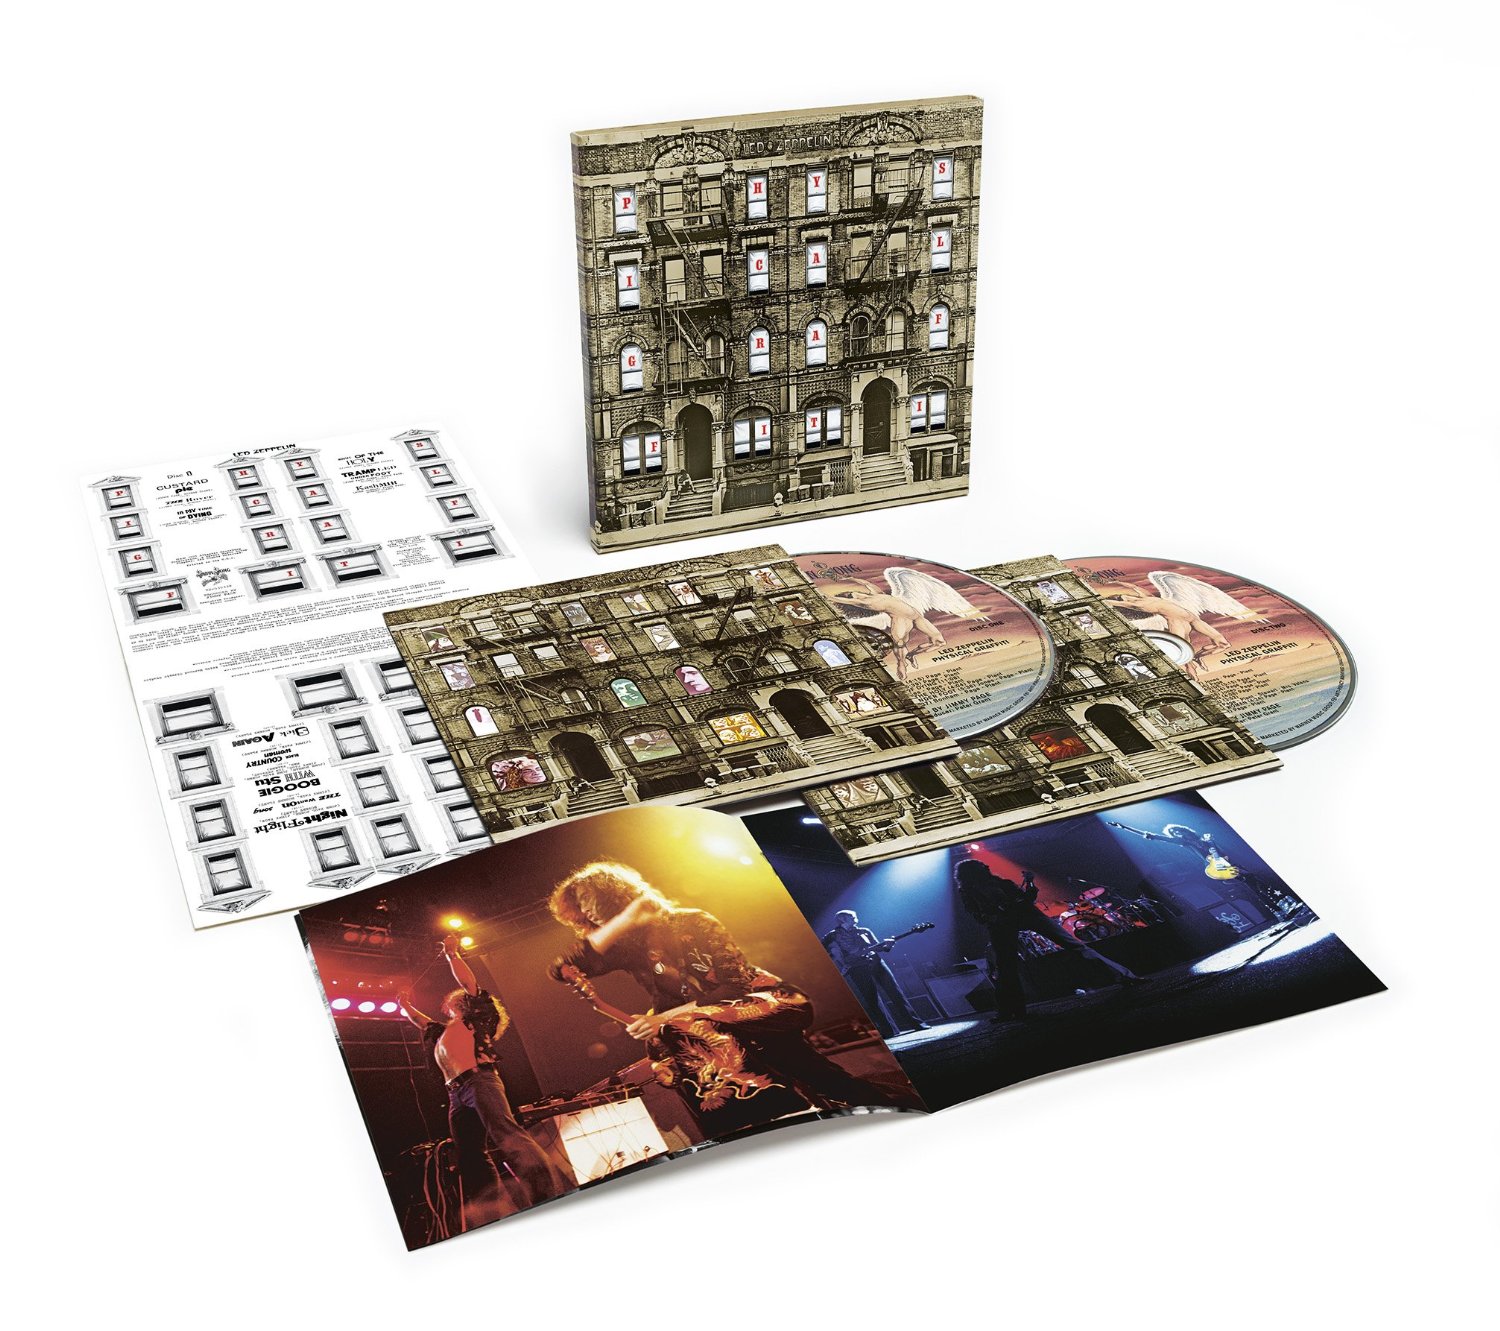 Led Zeppelin - Physical Graffiti(Remastered) - 2CD